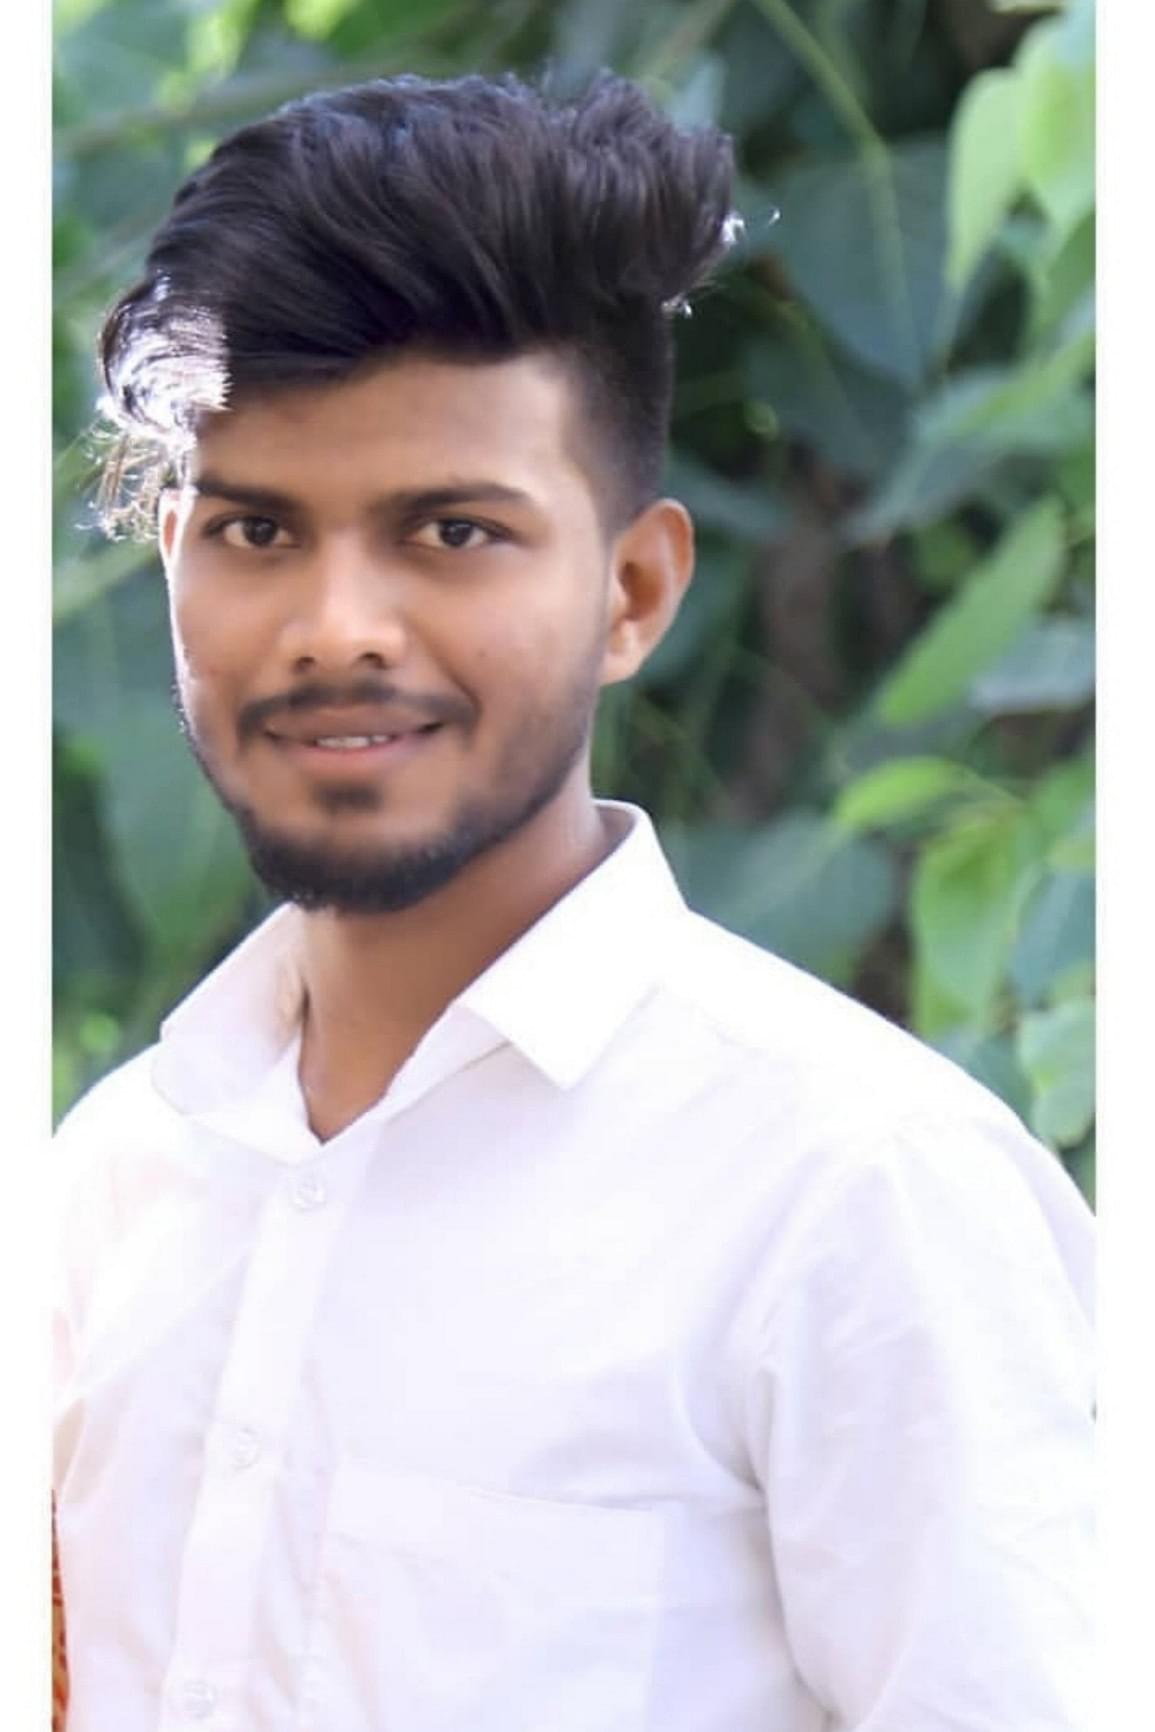 manish baviskar Profile Pic